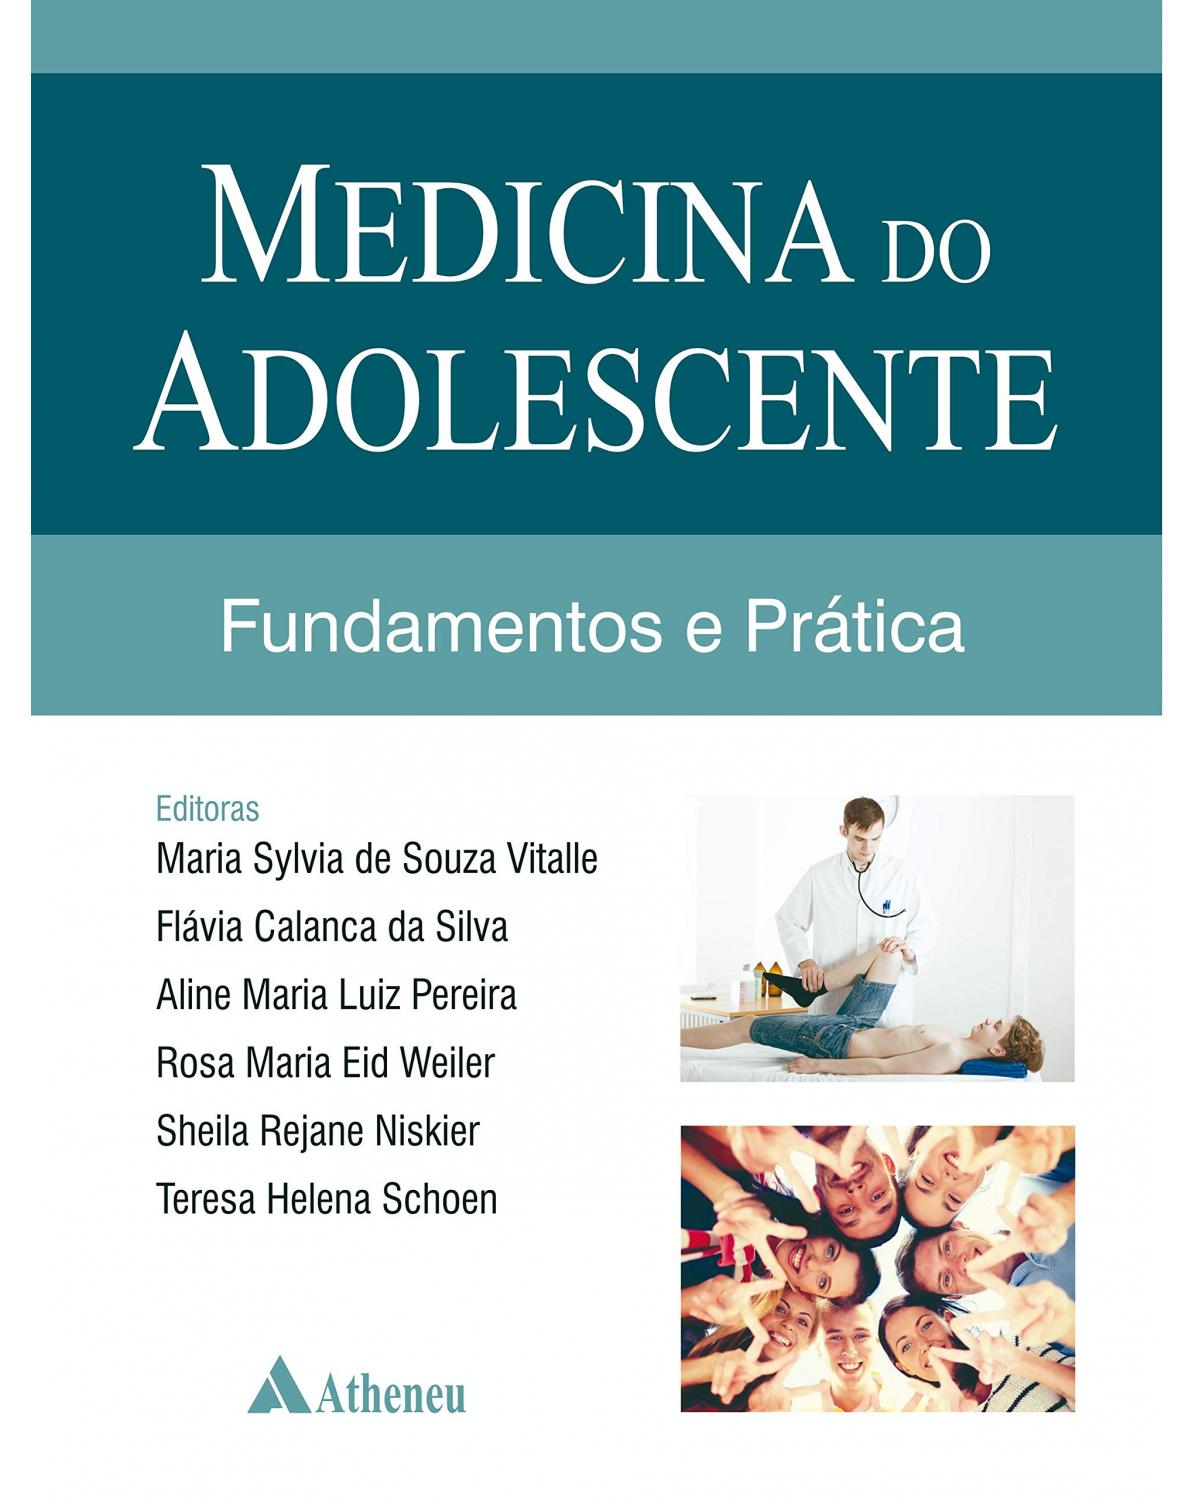 Medicina do adolescente - fundamentos e prática - 1ª Edição | 2019